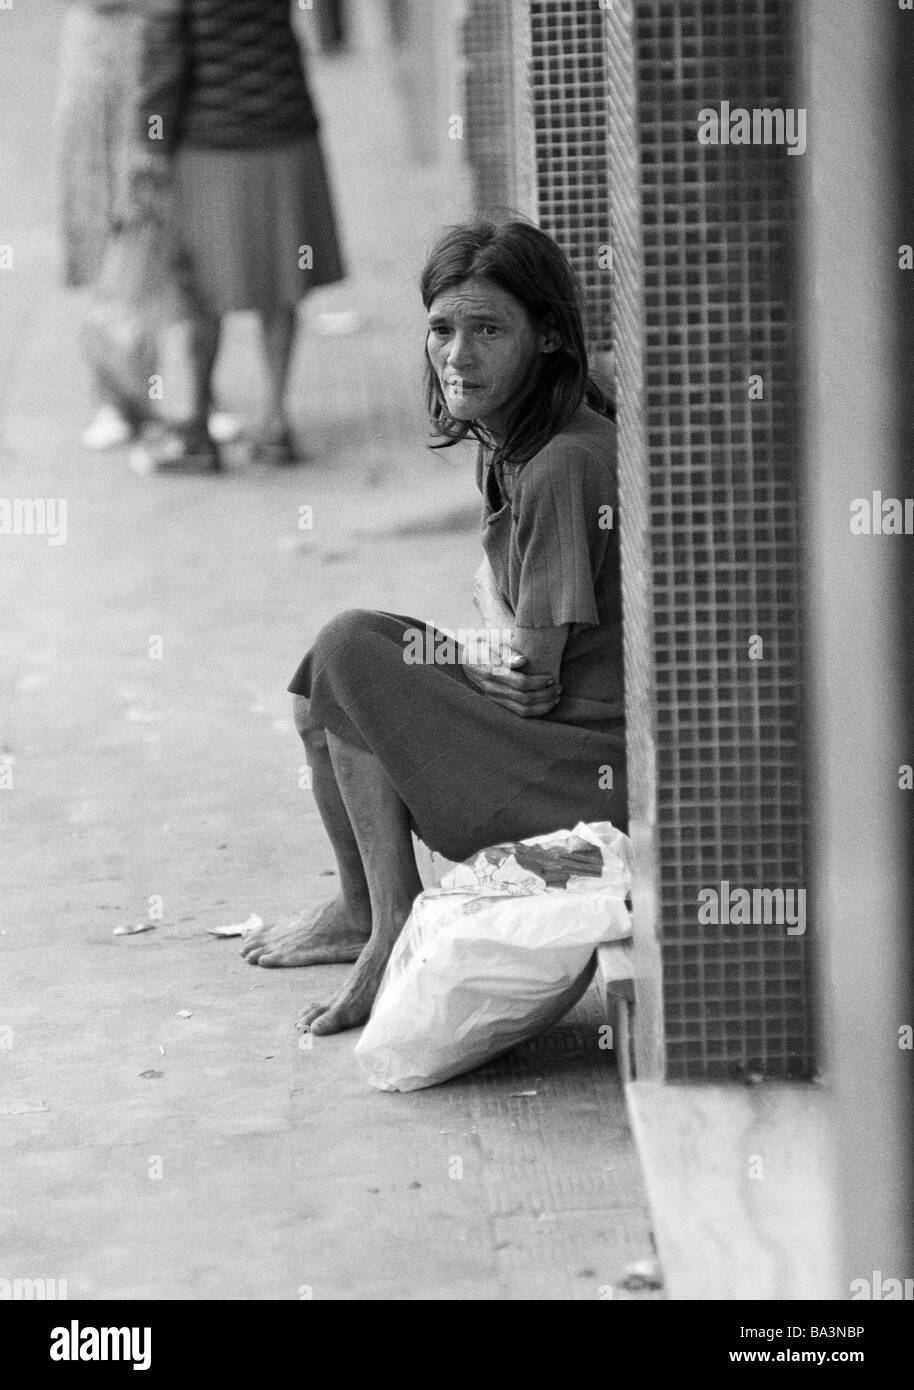 Negli anni settanta, foto in bianco e nero, persone poorness, mendicante-donna si siede sul bordo della strada, di età compresa tra 40 a 60 anni, Brasile, Minas Gerais, Belo Horizonte Foto Stock